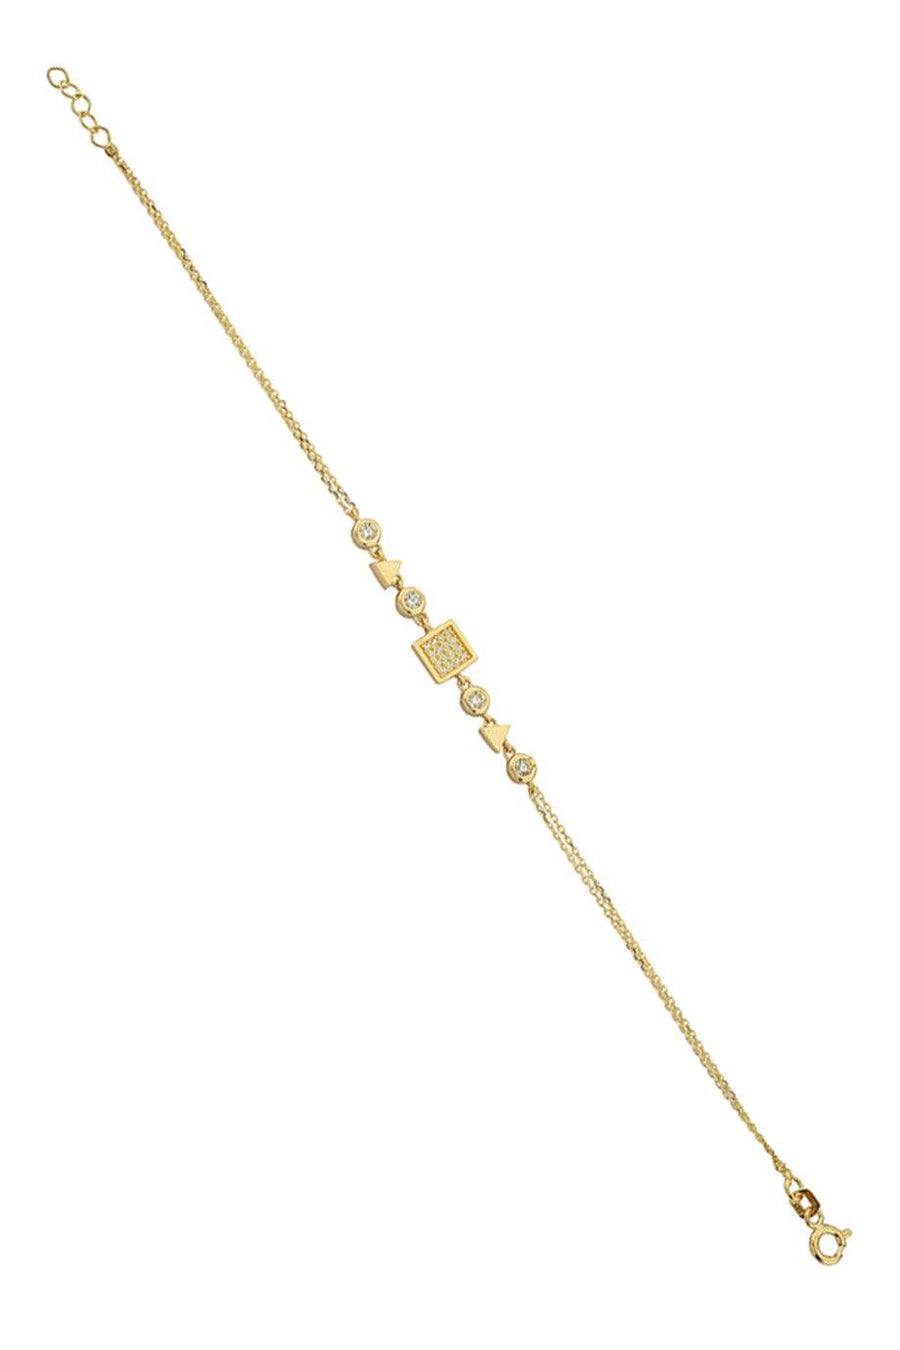 Gold Design Bracelet